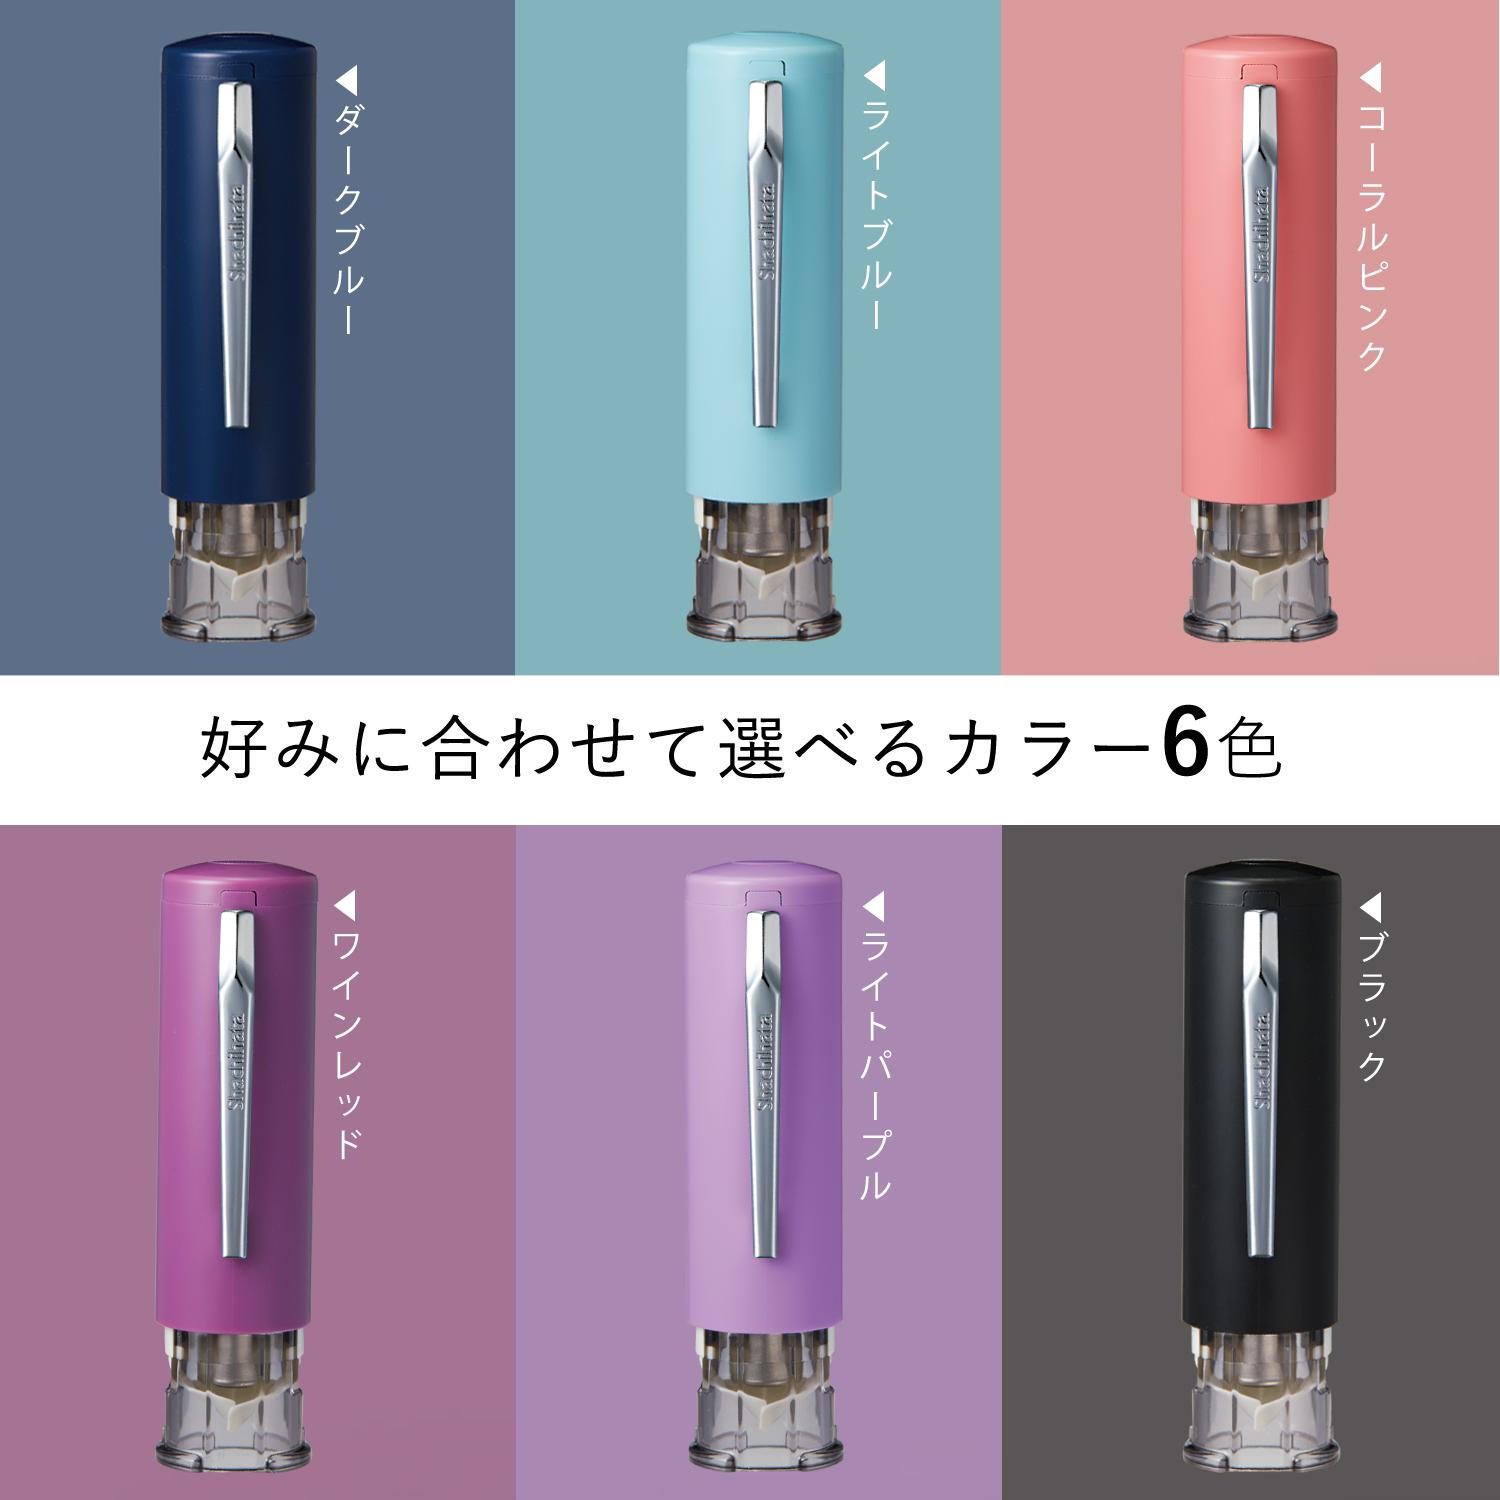 キャップレス6 ワインレッド 別製|XL-U6N-4|商品カタログ|シヤチハタ